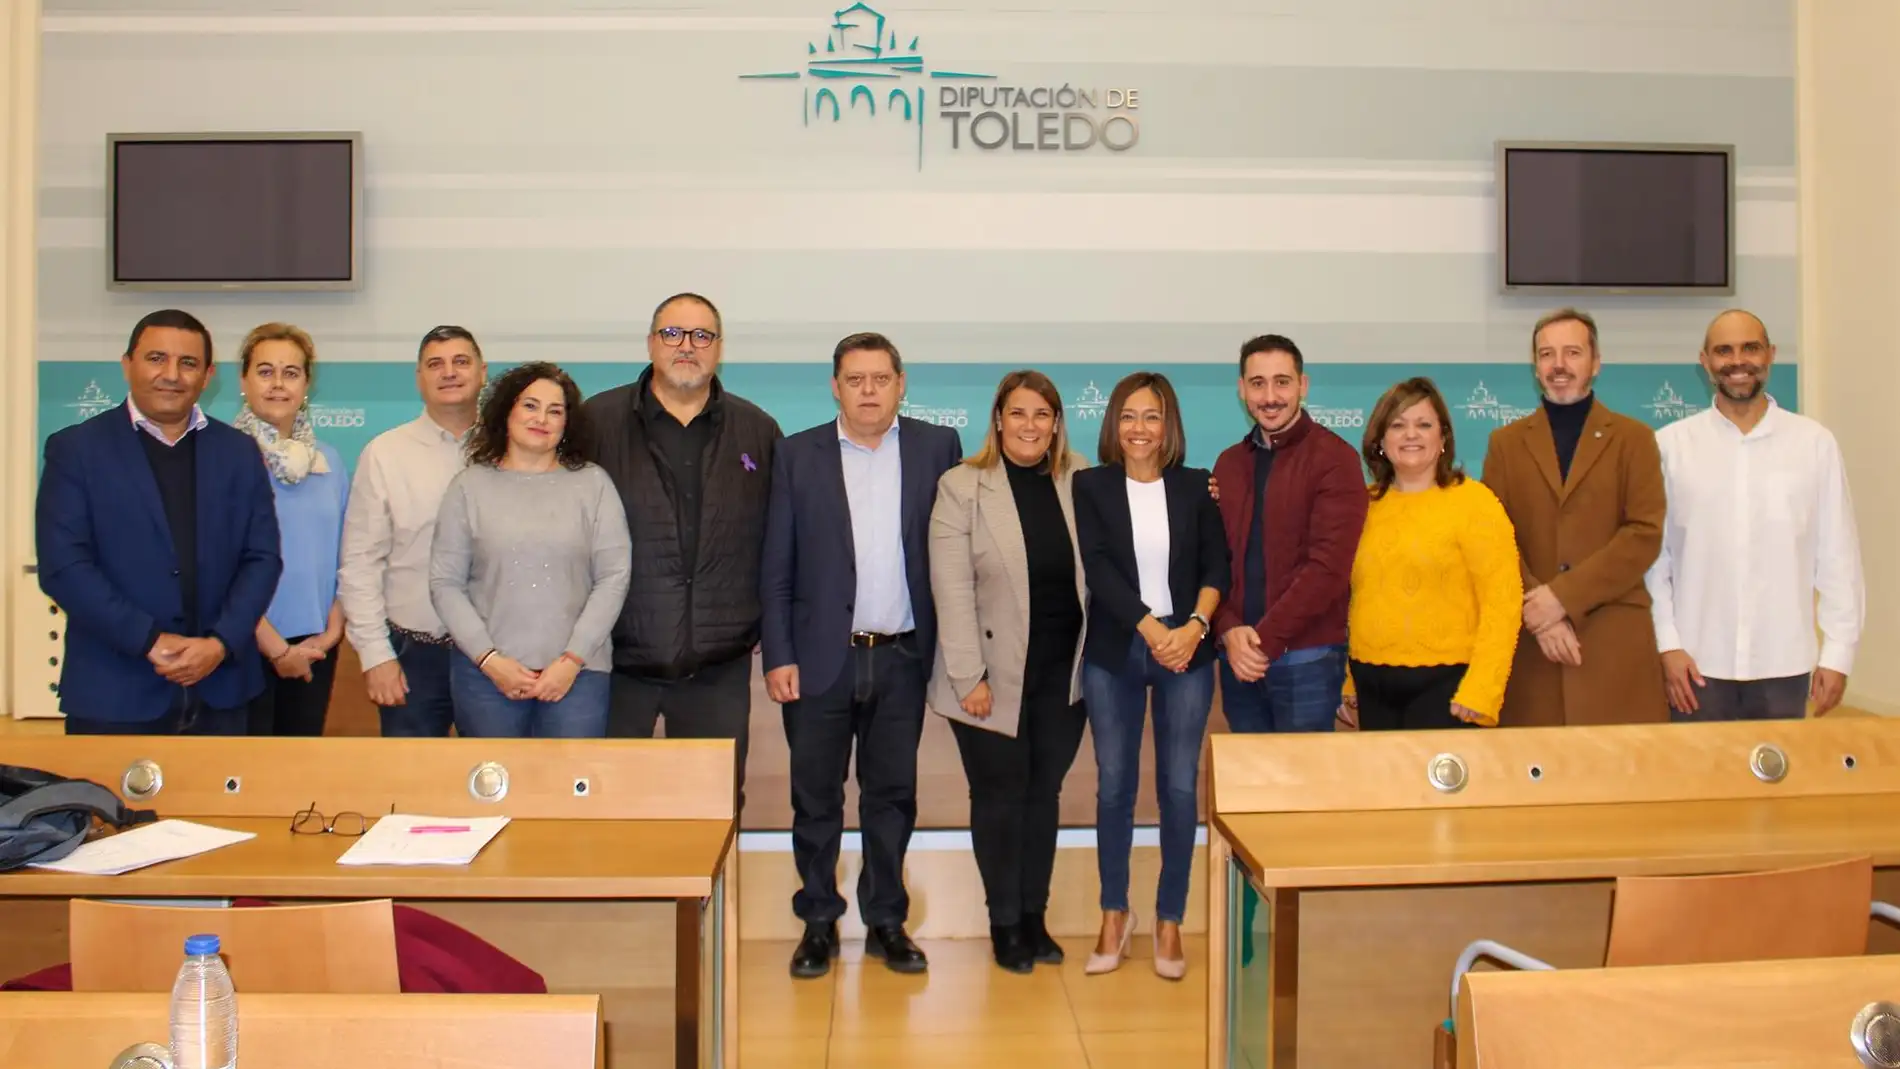 PSOE registra 6 enmiendas a los presupuestos de la Diputación de Toledo